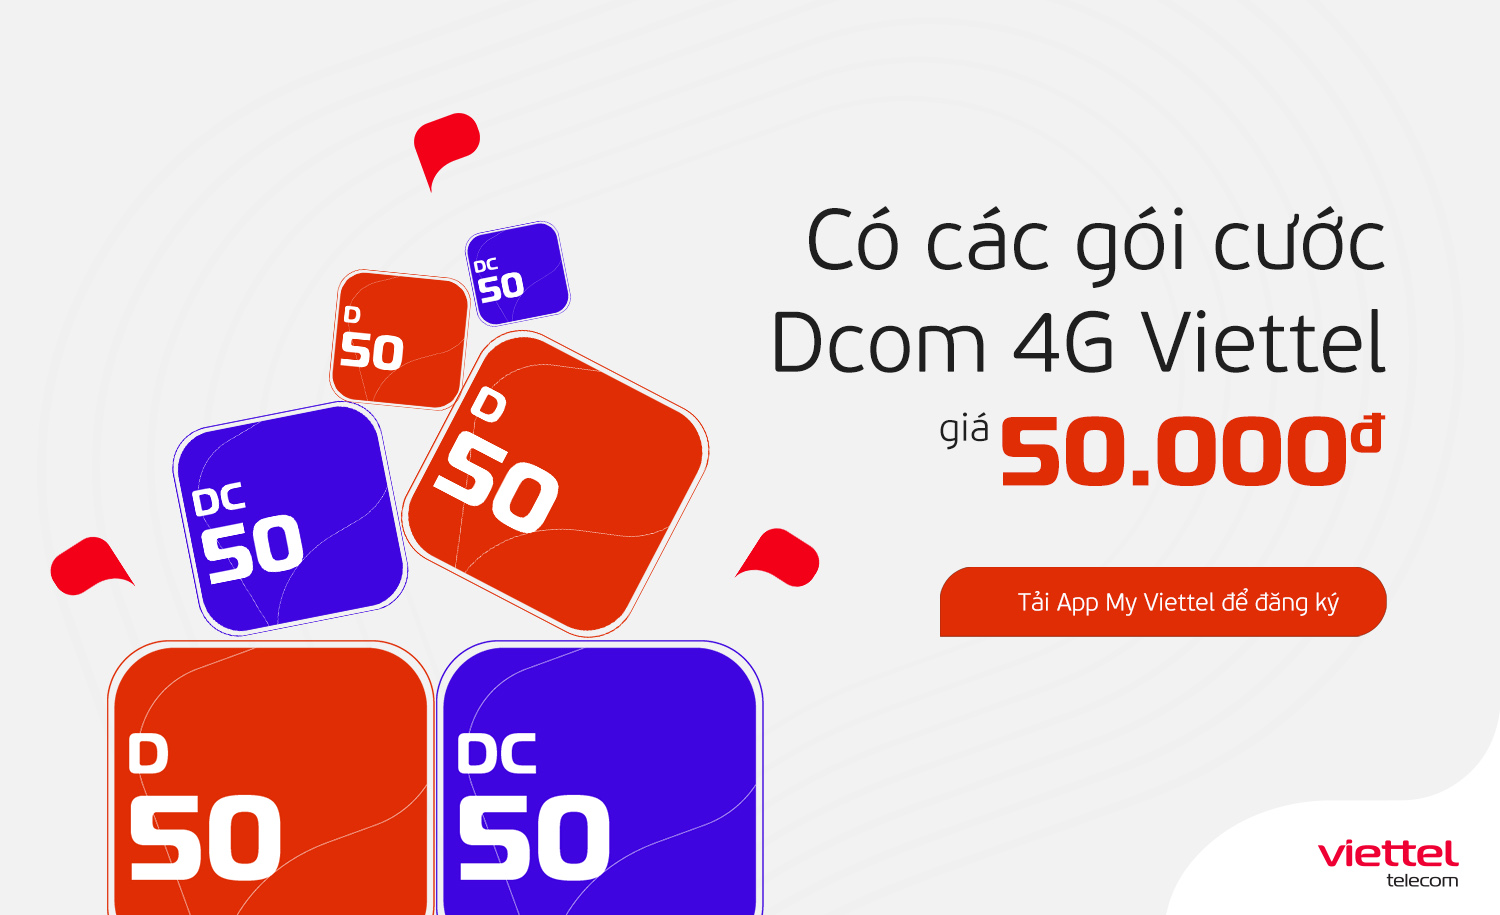 Các gói cước Dcom 4G Viettel giá rẻ